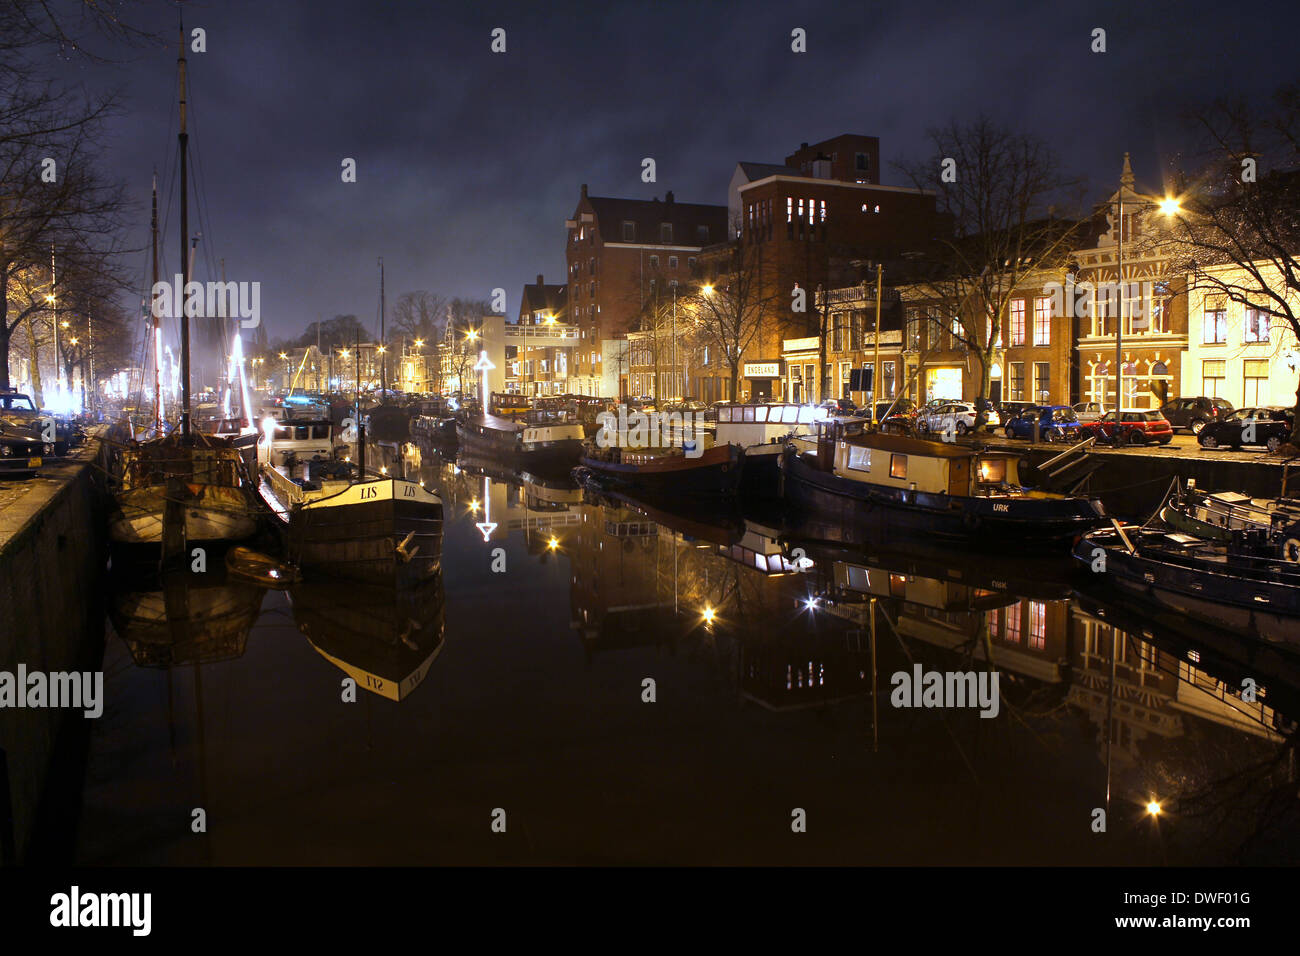 Les entrepôts et les navires à voile le long des canaux à Noorderhaven (nord du port) de Groningen, Pays-Bas la nuit Banque D'Images